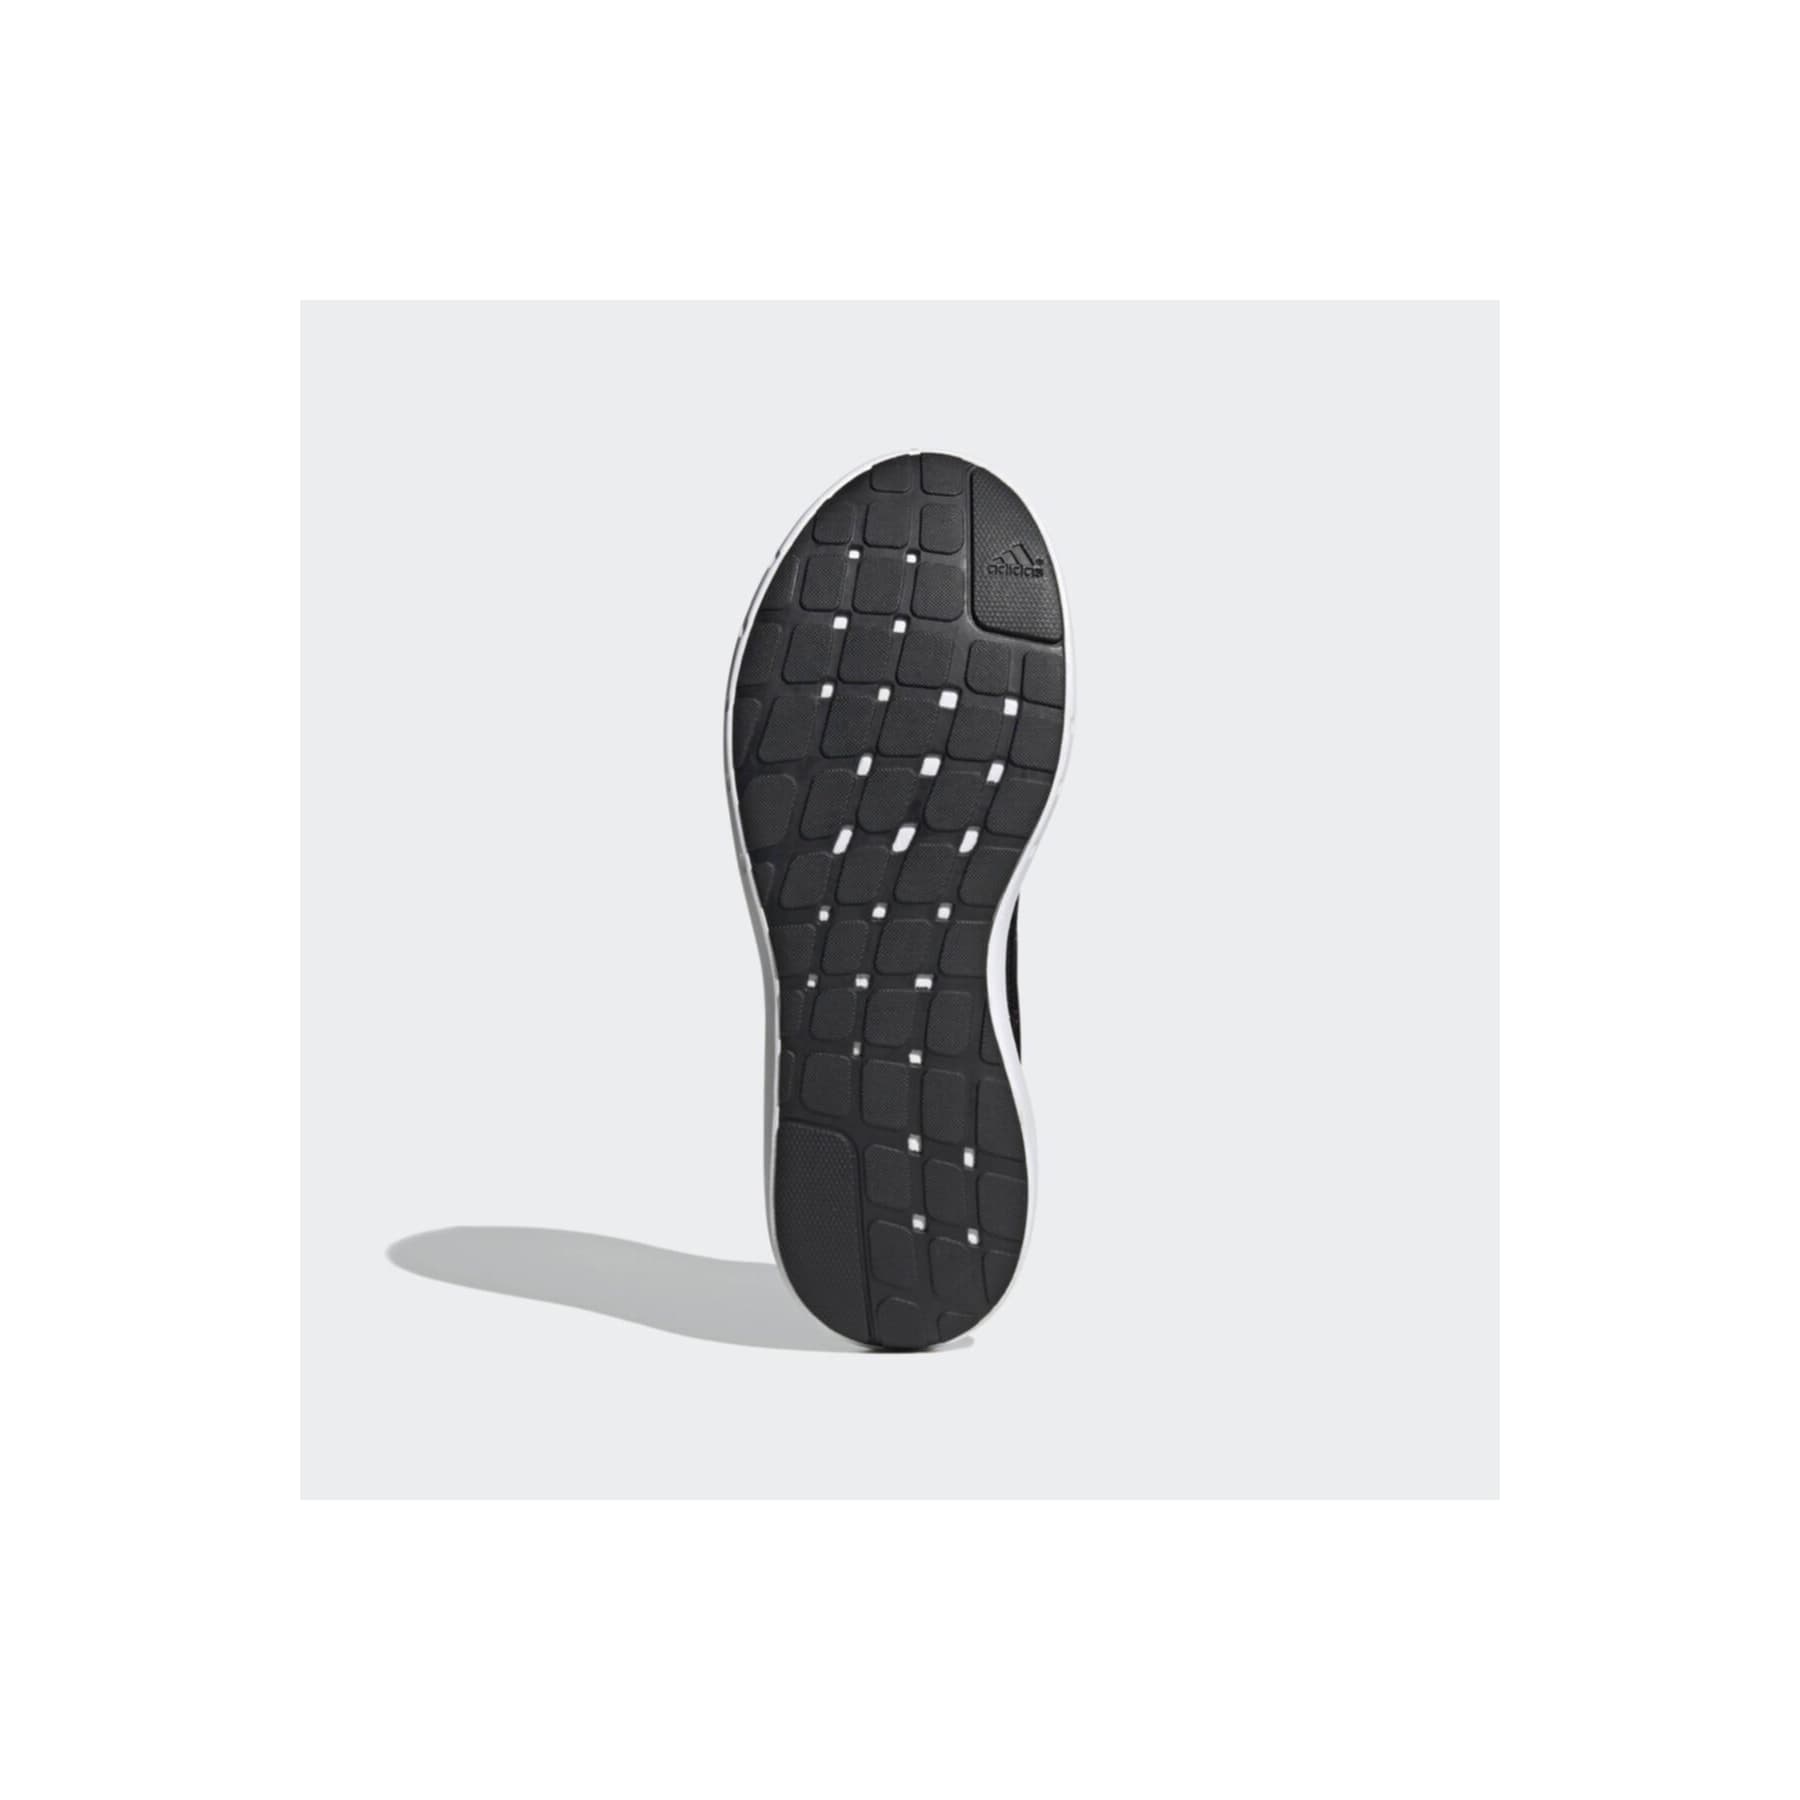 Coreracer Erkek Siyah Koşu Ayakkabısı (FX3581)